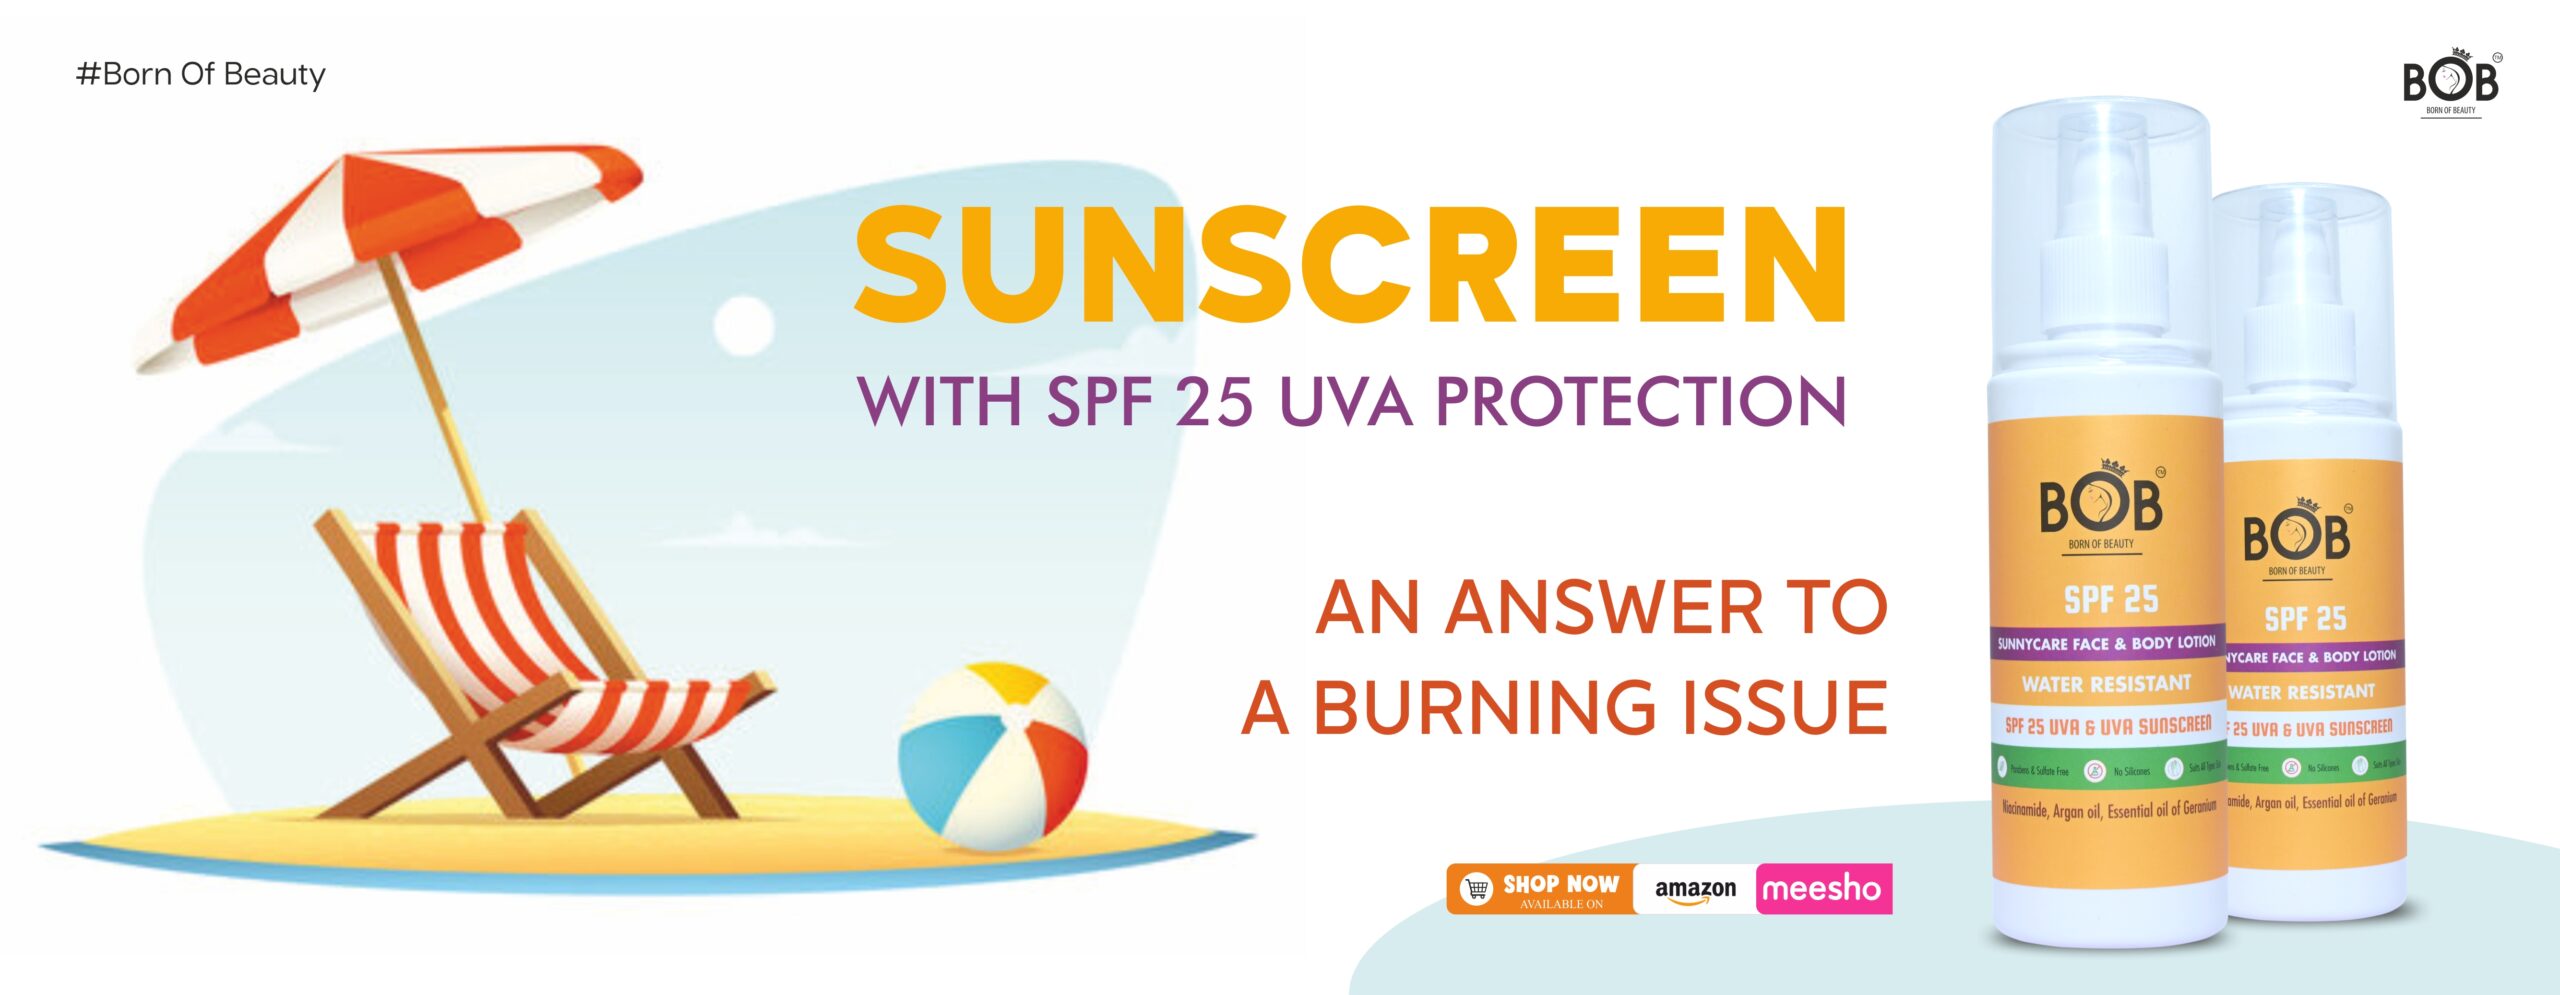 Sunscreen SPF 25